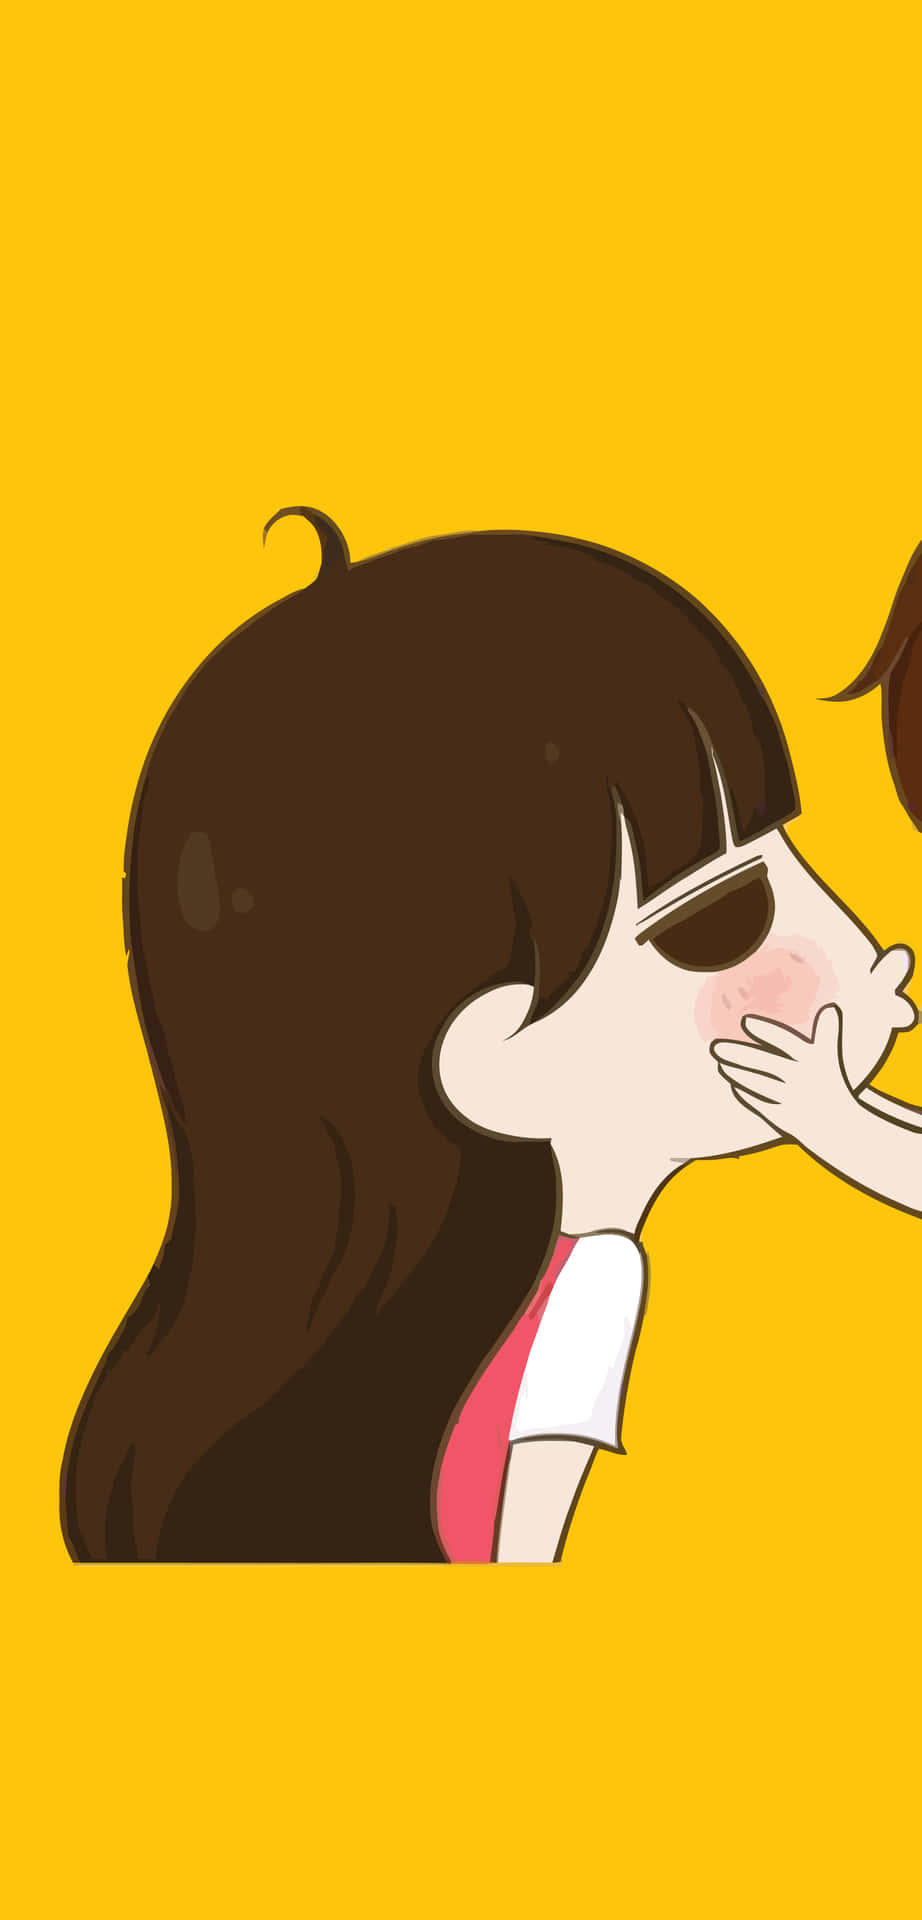 En pige kysser en dreng på kinden. Wallpaper